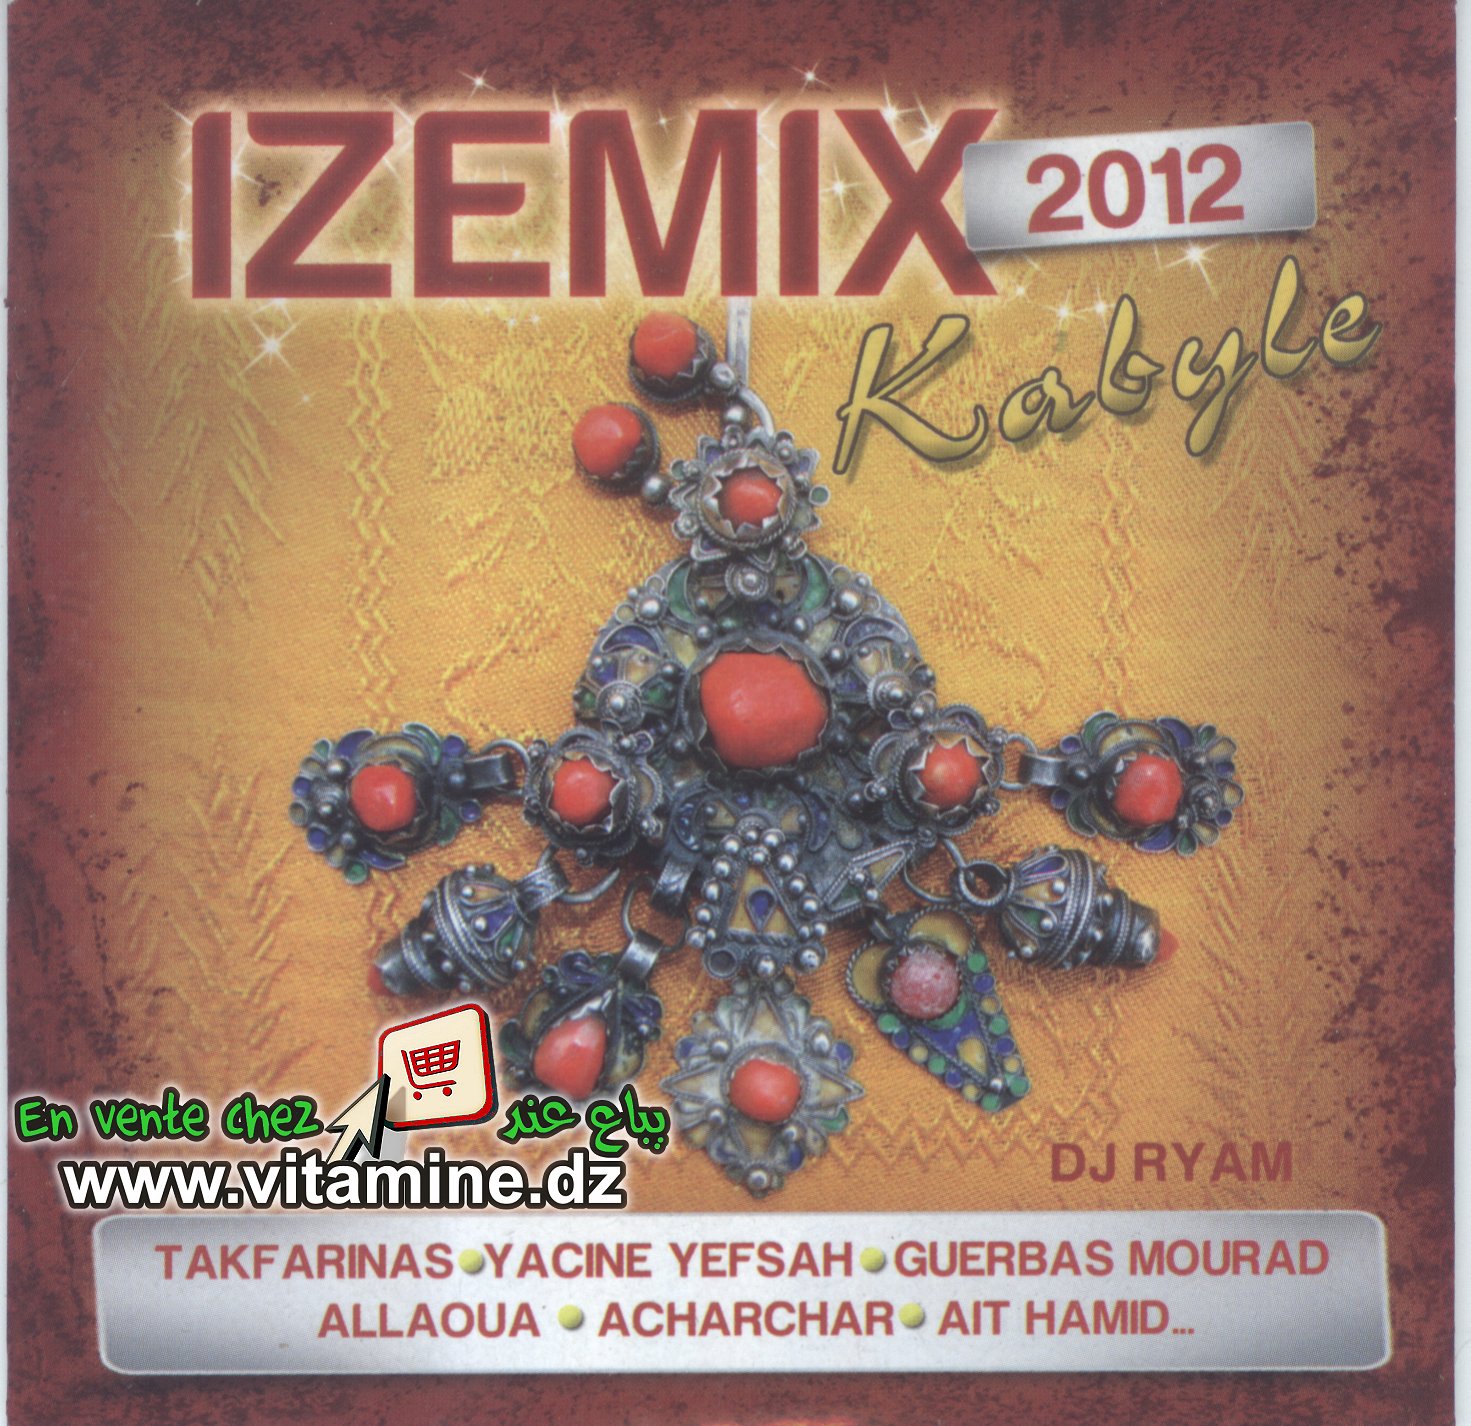 Izemix 2012 - kabyle